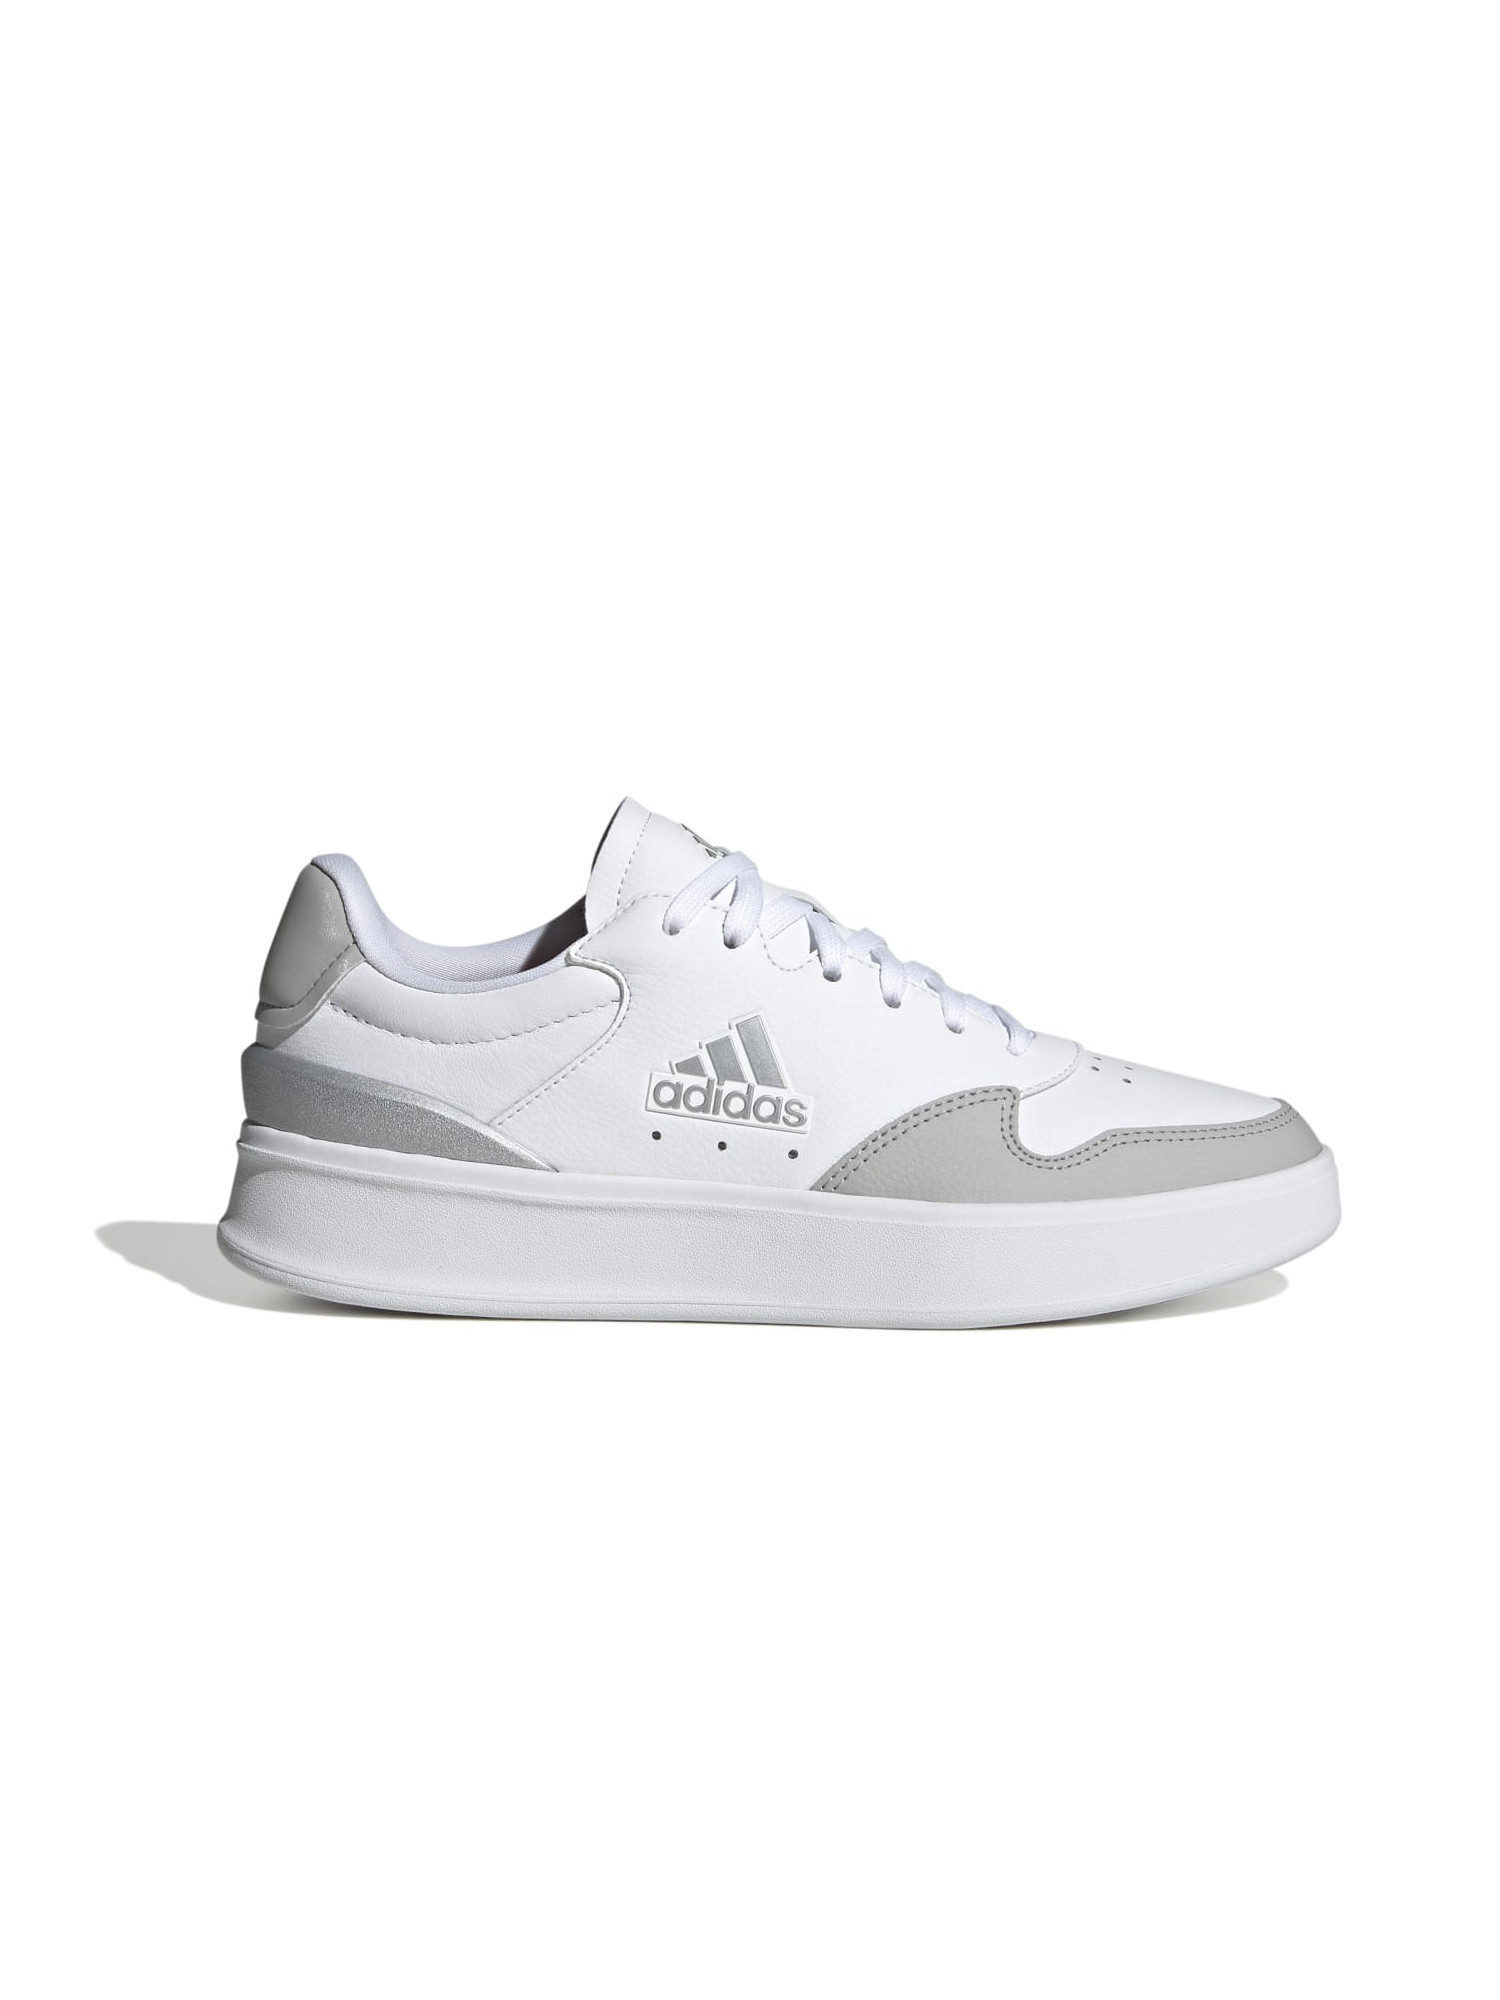 Adidas - Kantana shoes, White, large image number 0